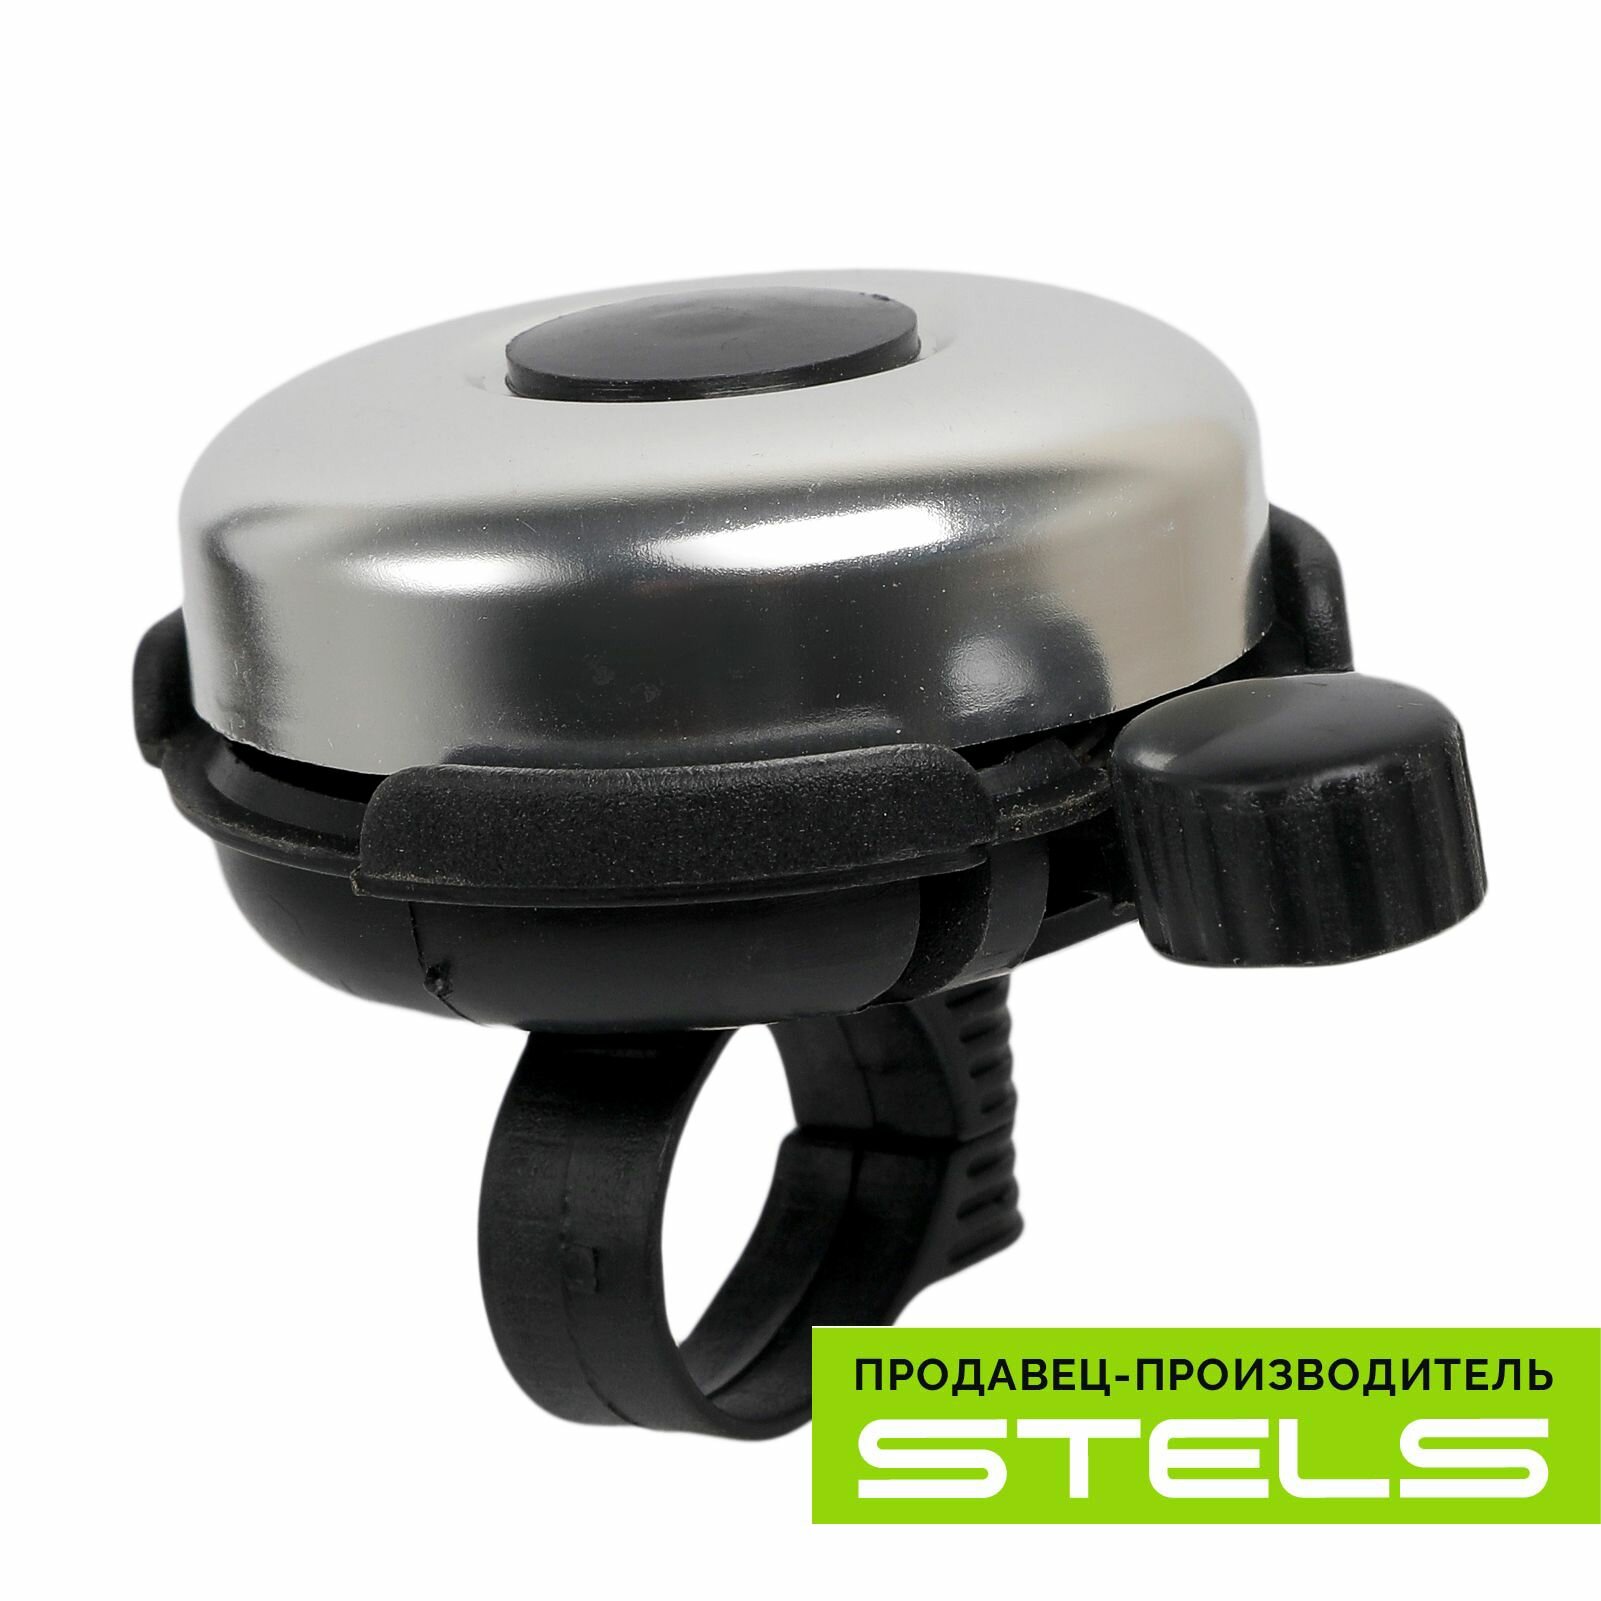 Звонок велосипедный STELS XN-052 - алюминий+пластик 52 мм чёрно-серый